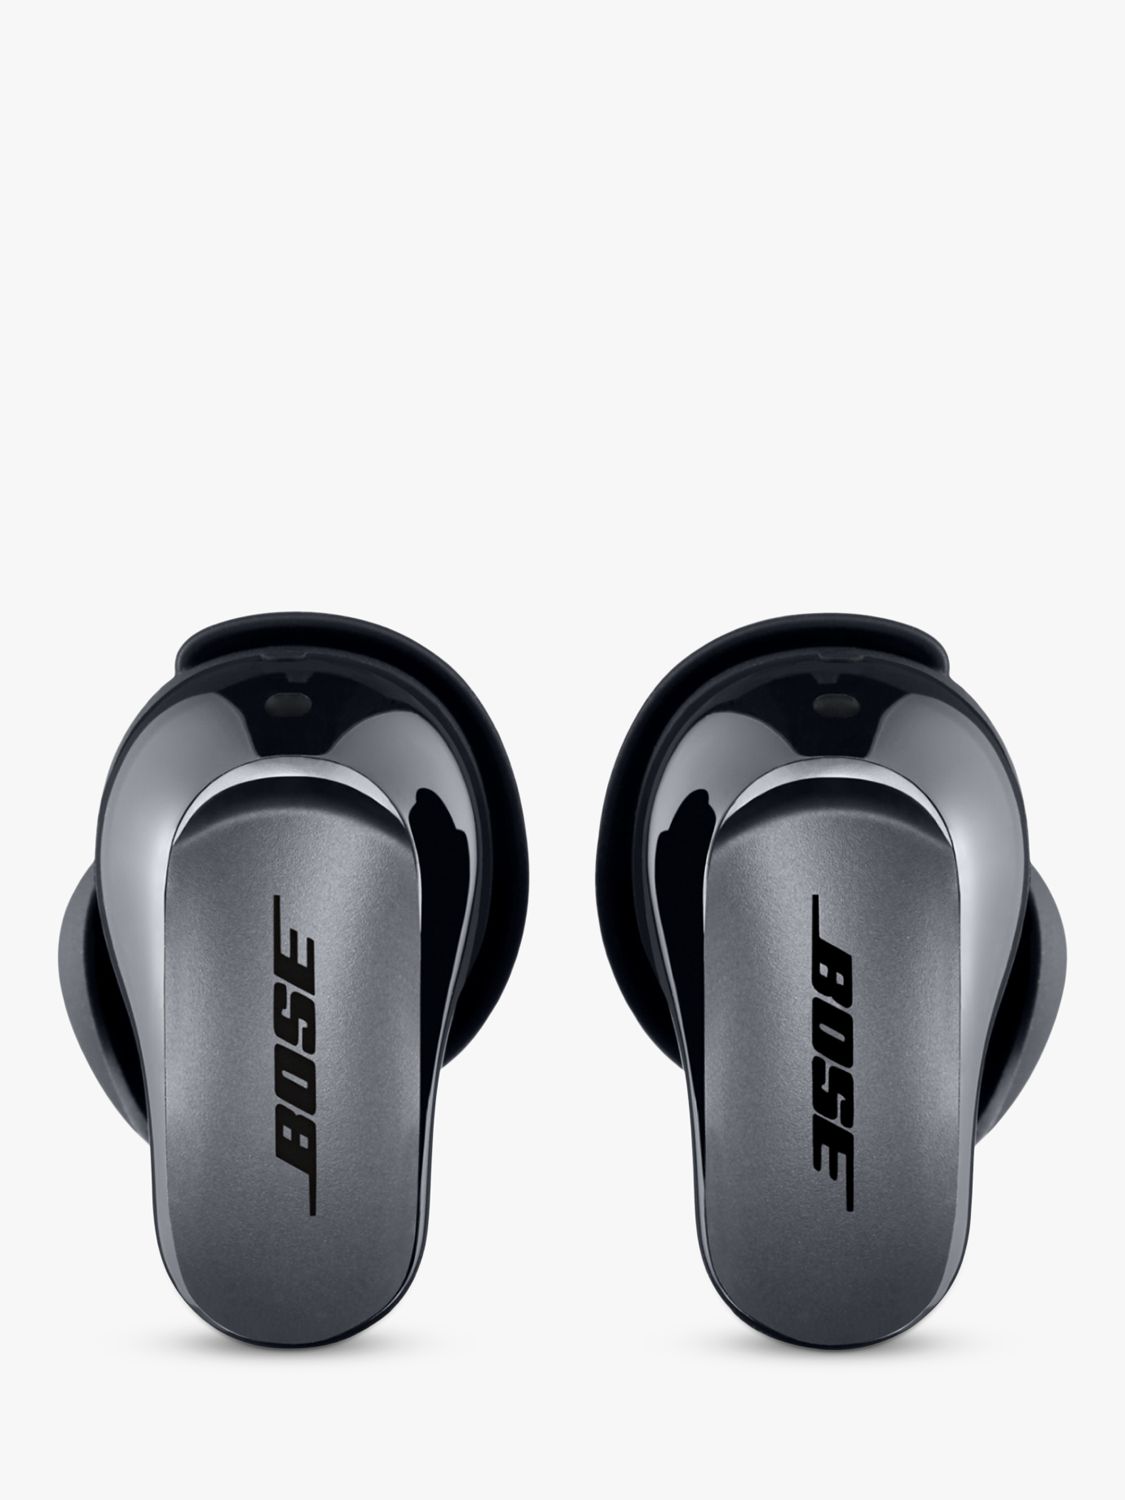 Bose QuietComfort Ultra Earbuds True Wireless Bluetooth In-Ear